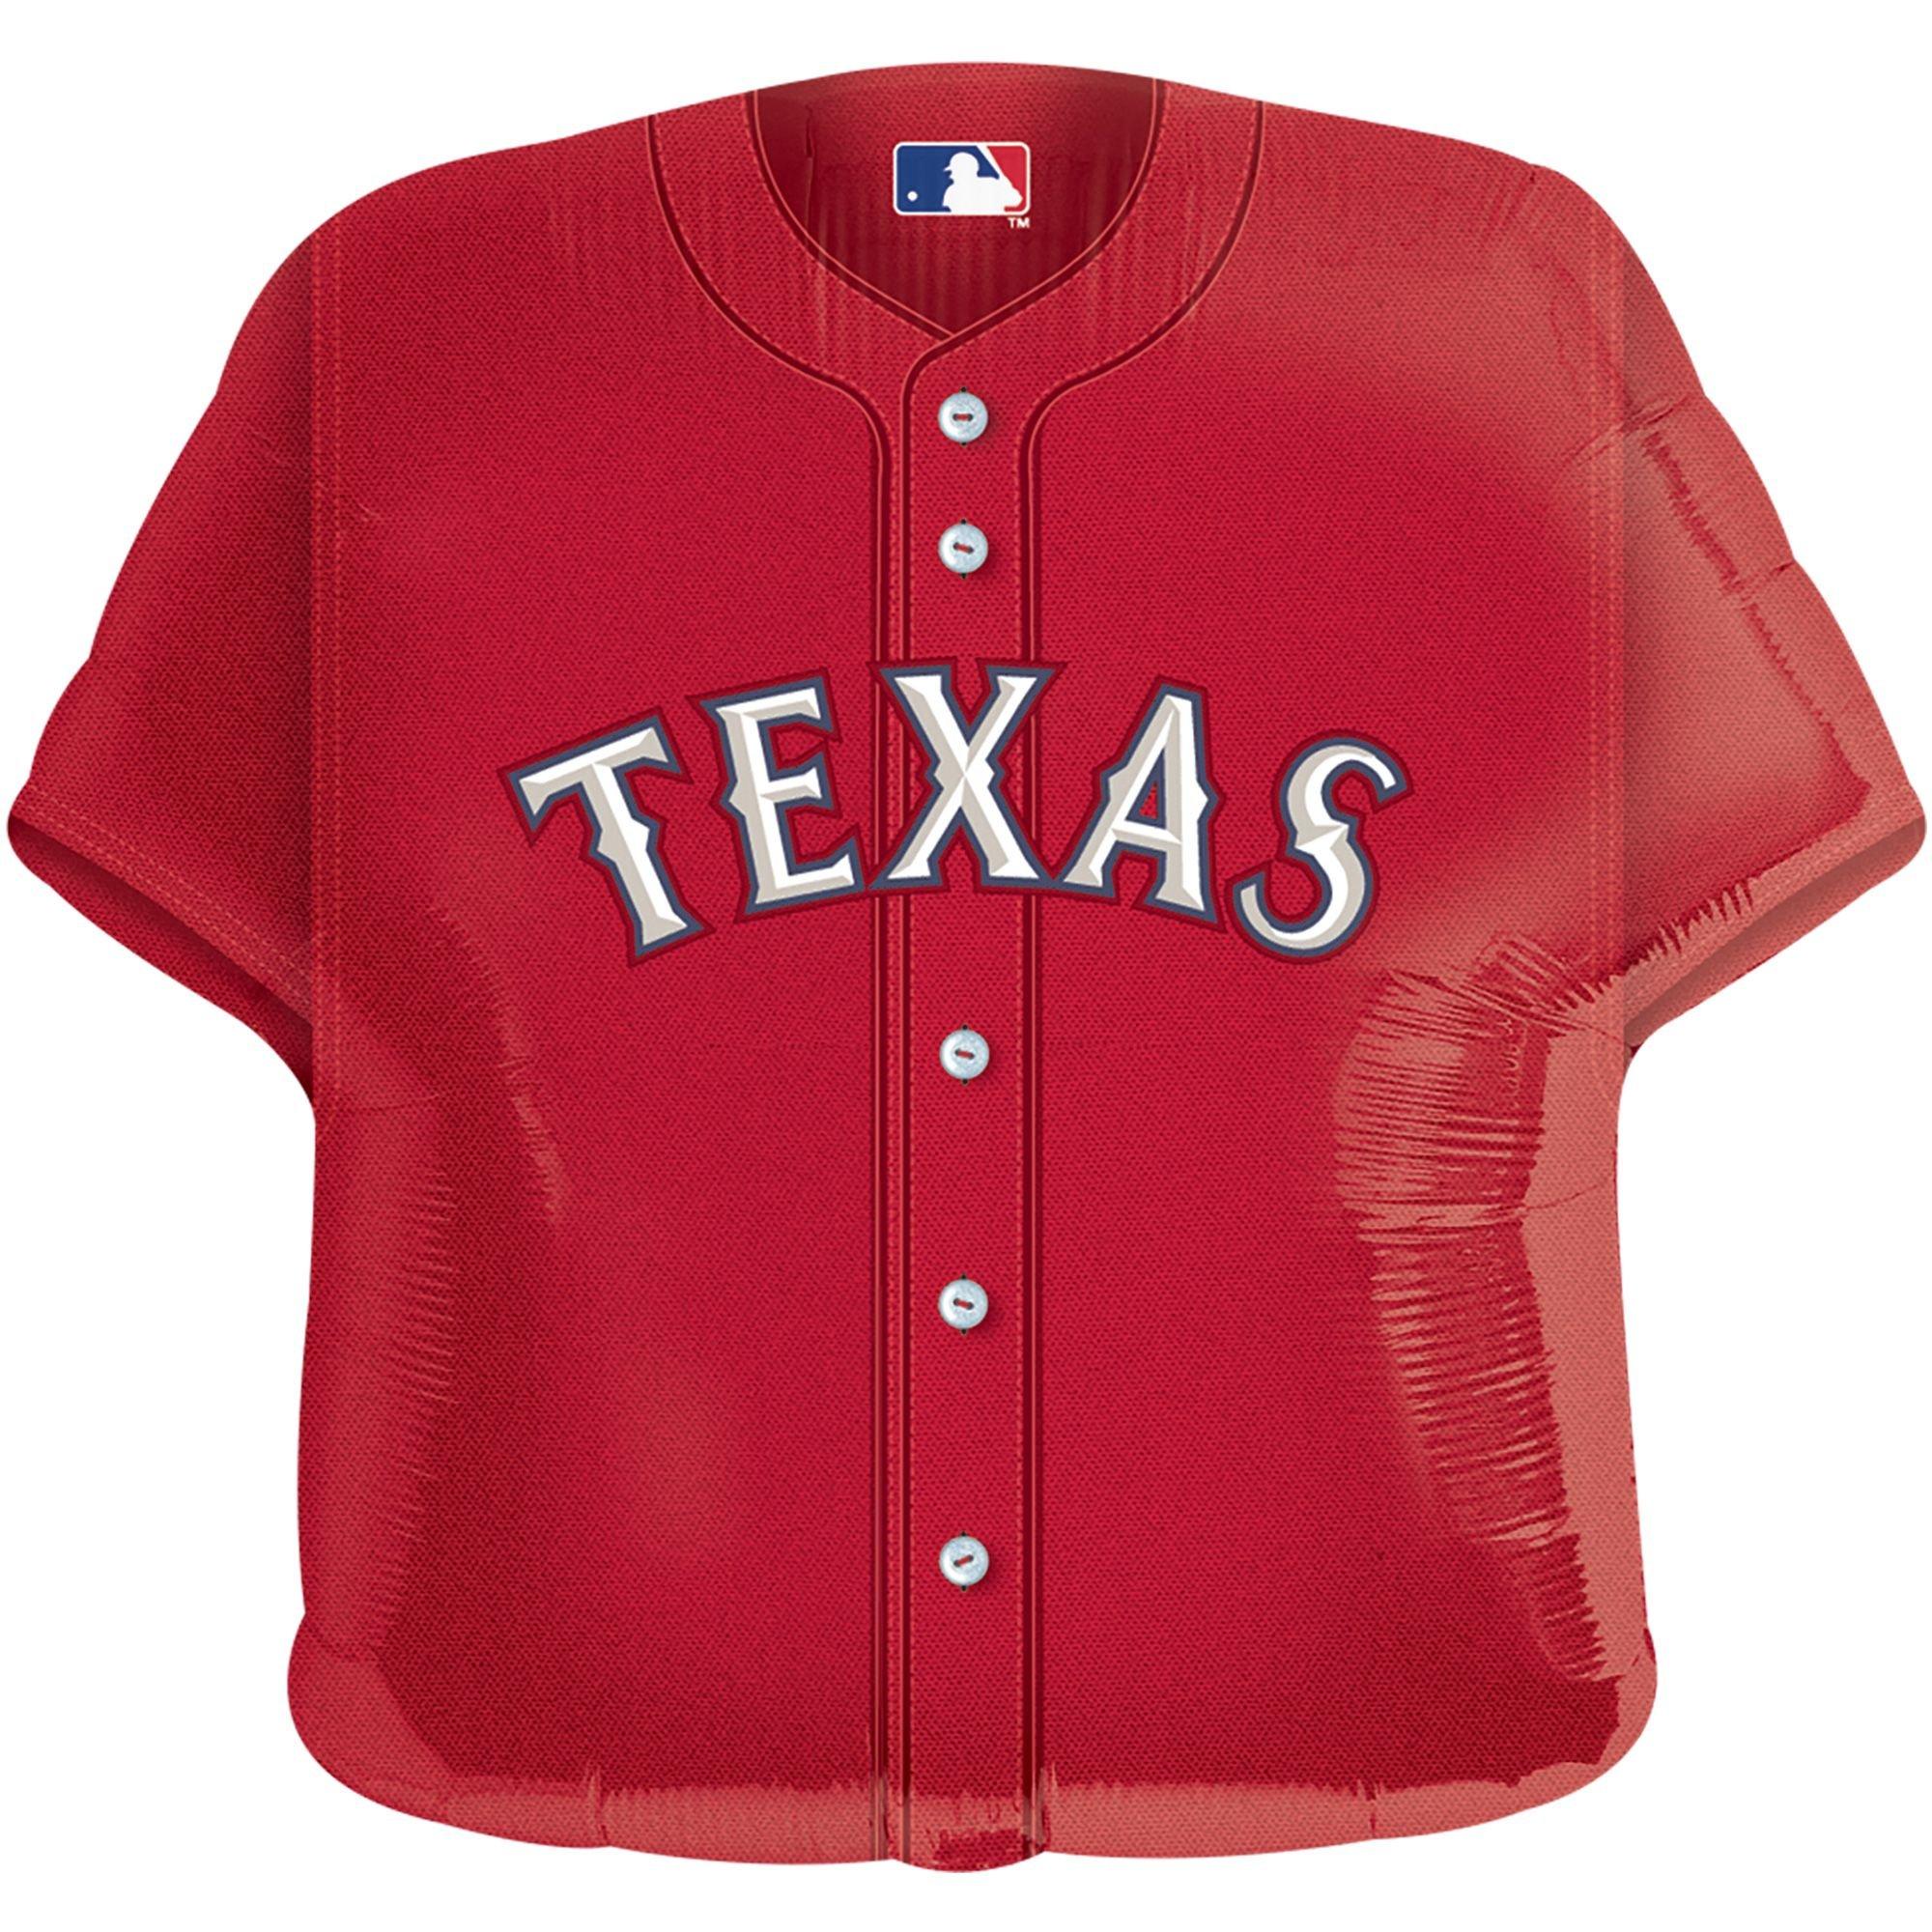 texas rangers old jerseys